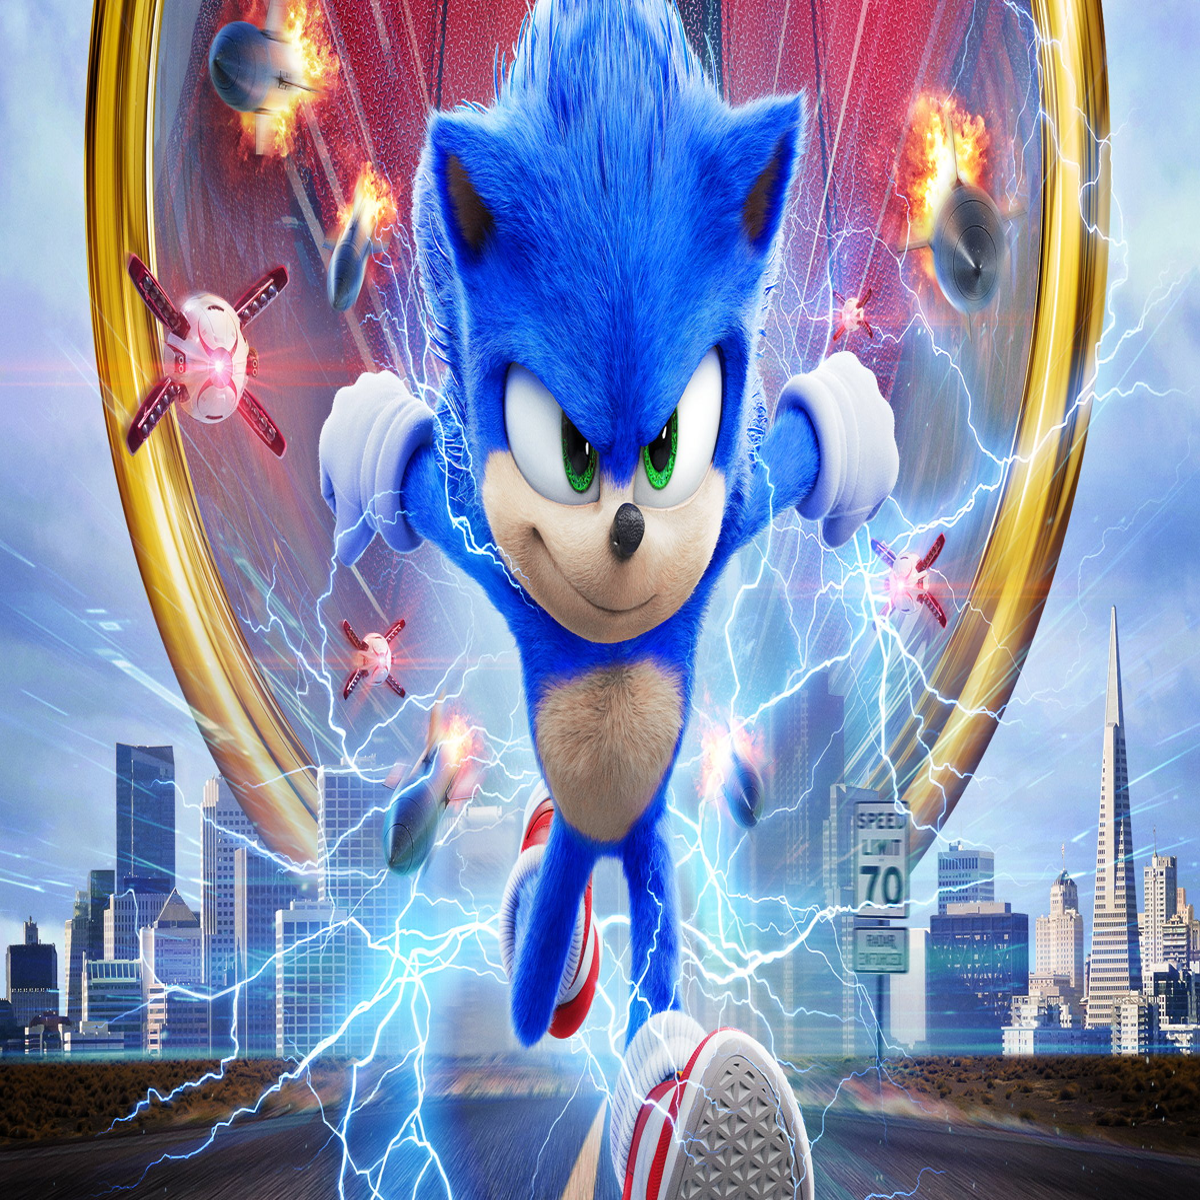 Movie Sonic 